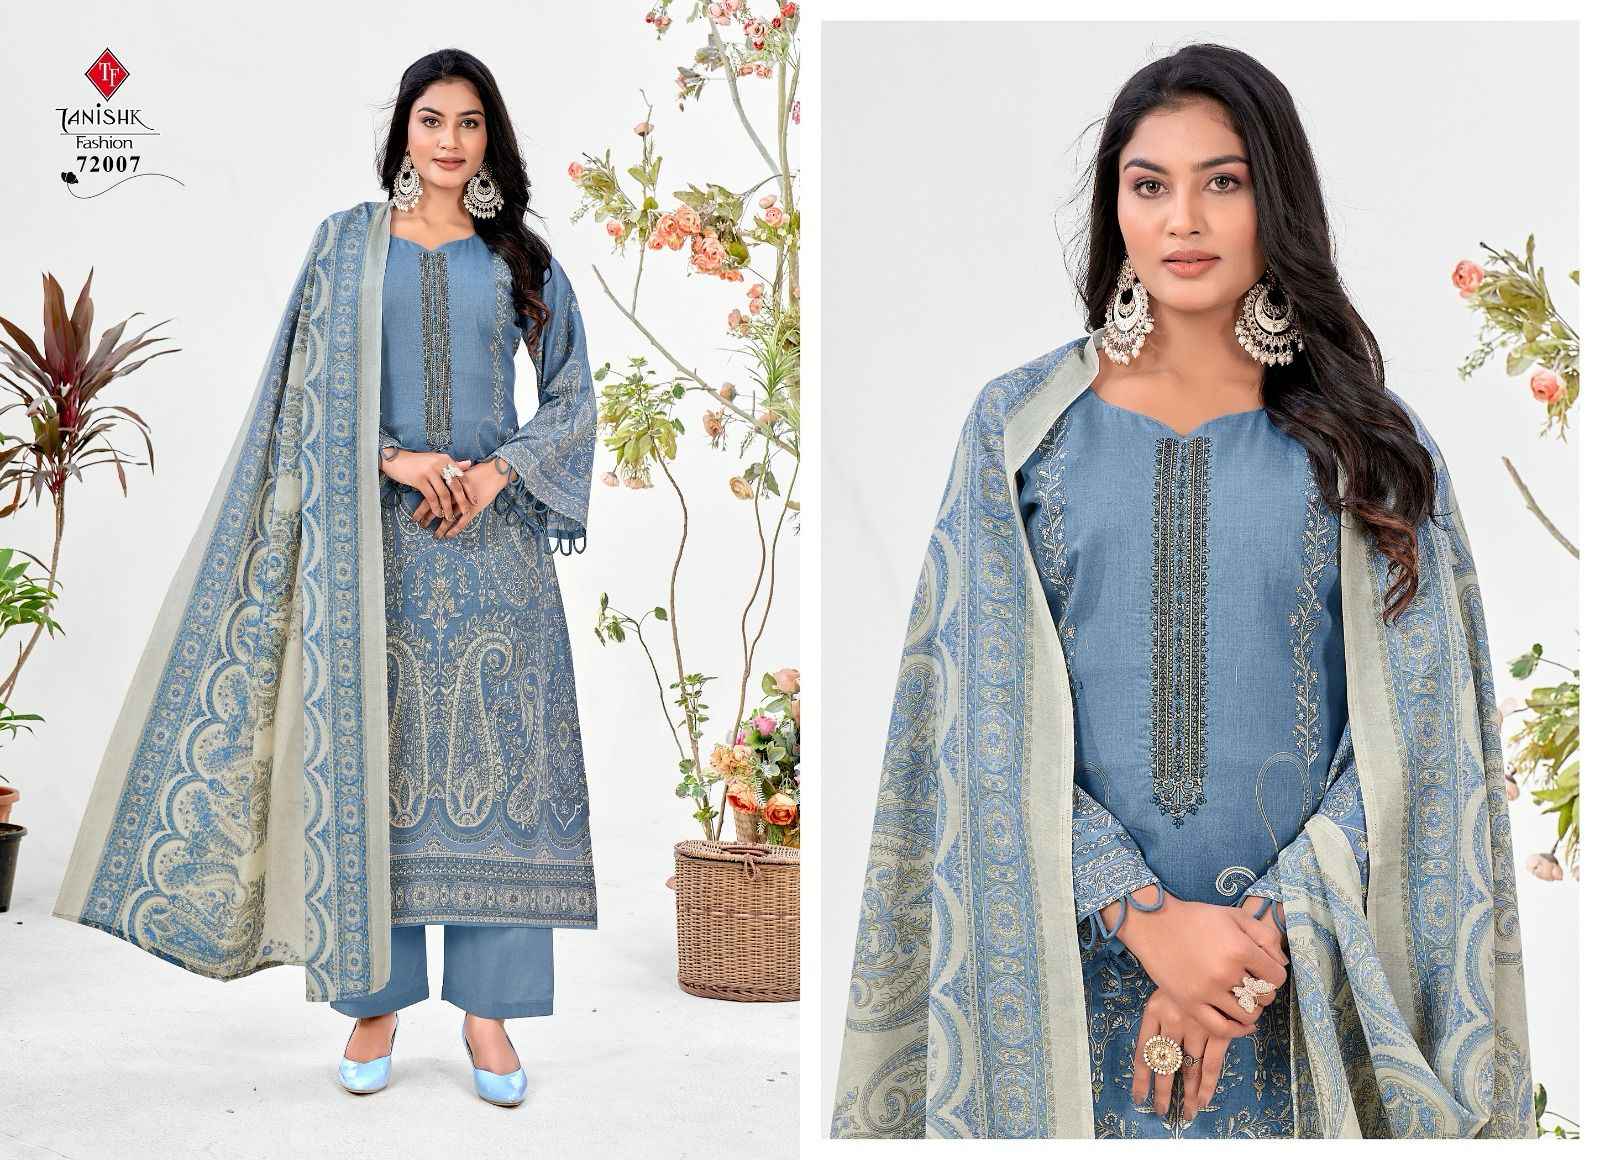 Taniksh Fashion Mehraz Vol-6 Cambric Cotton Suit (8 pcs Catalogue)